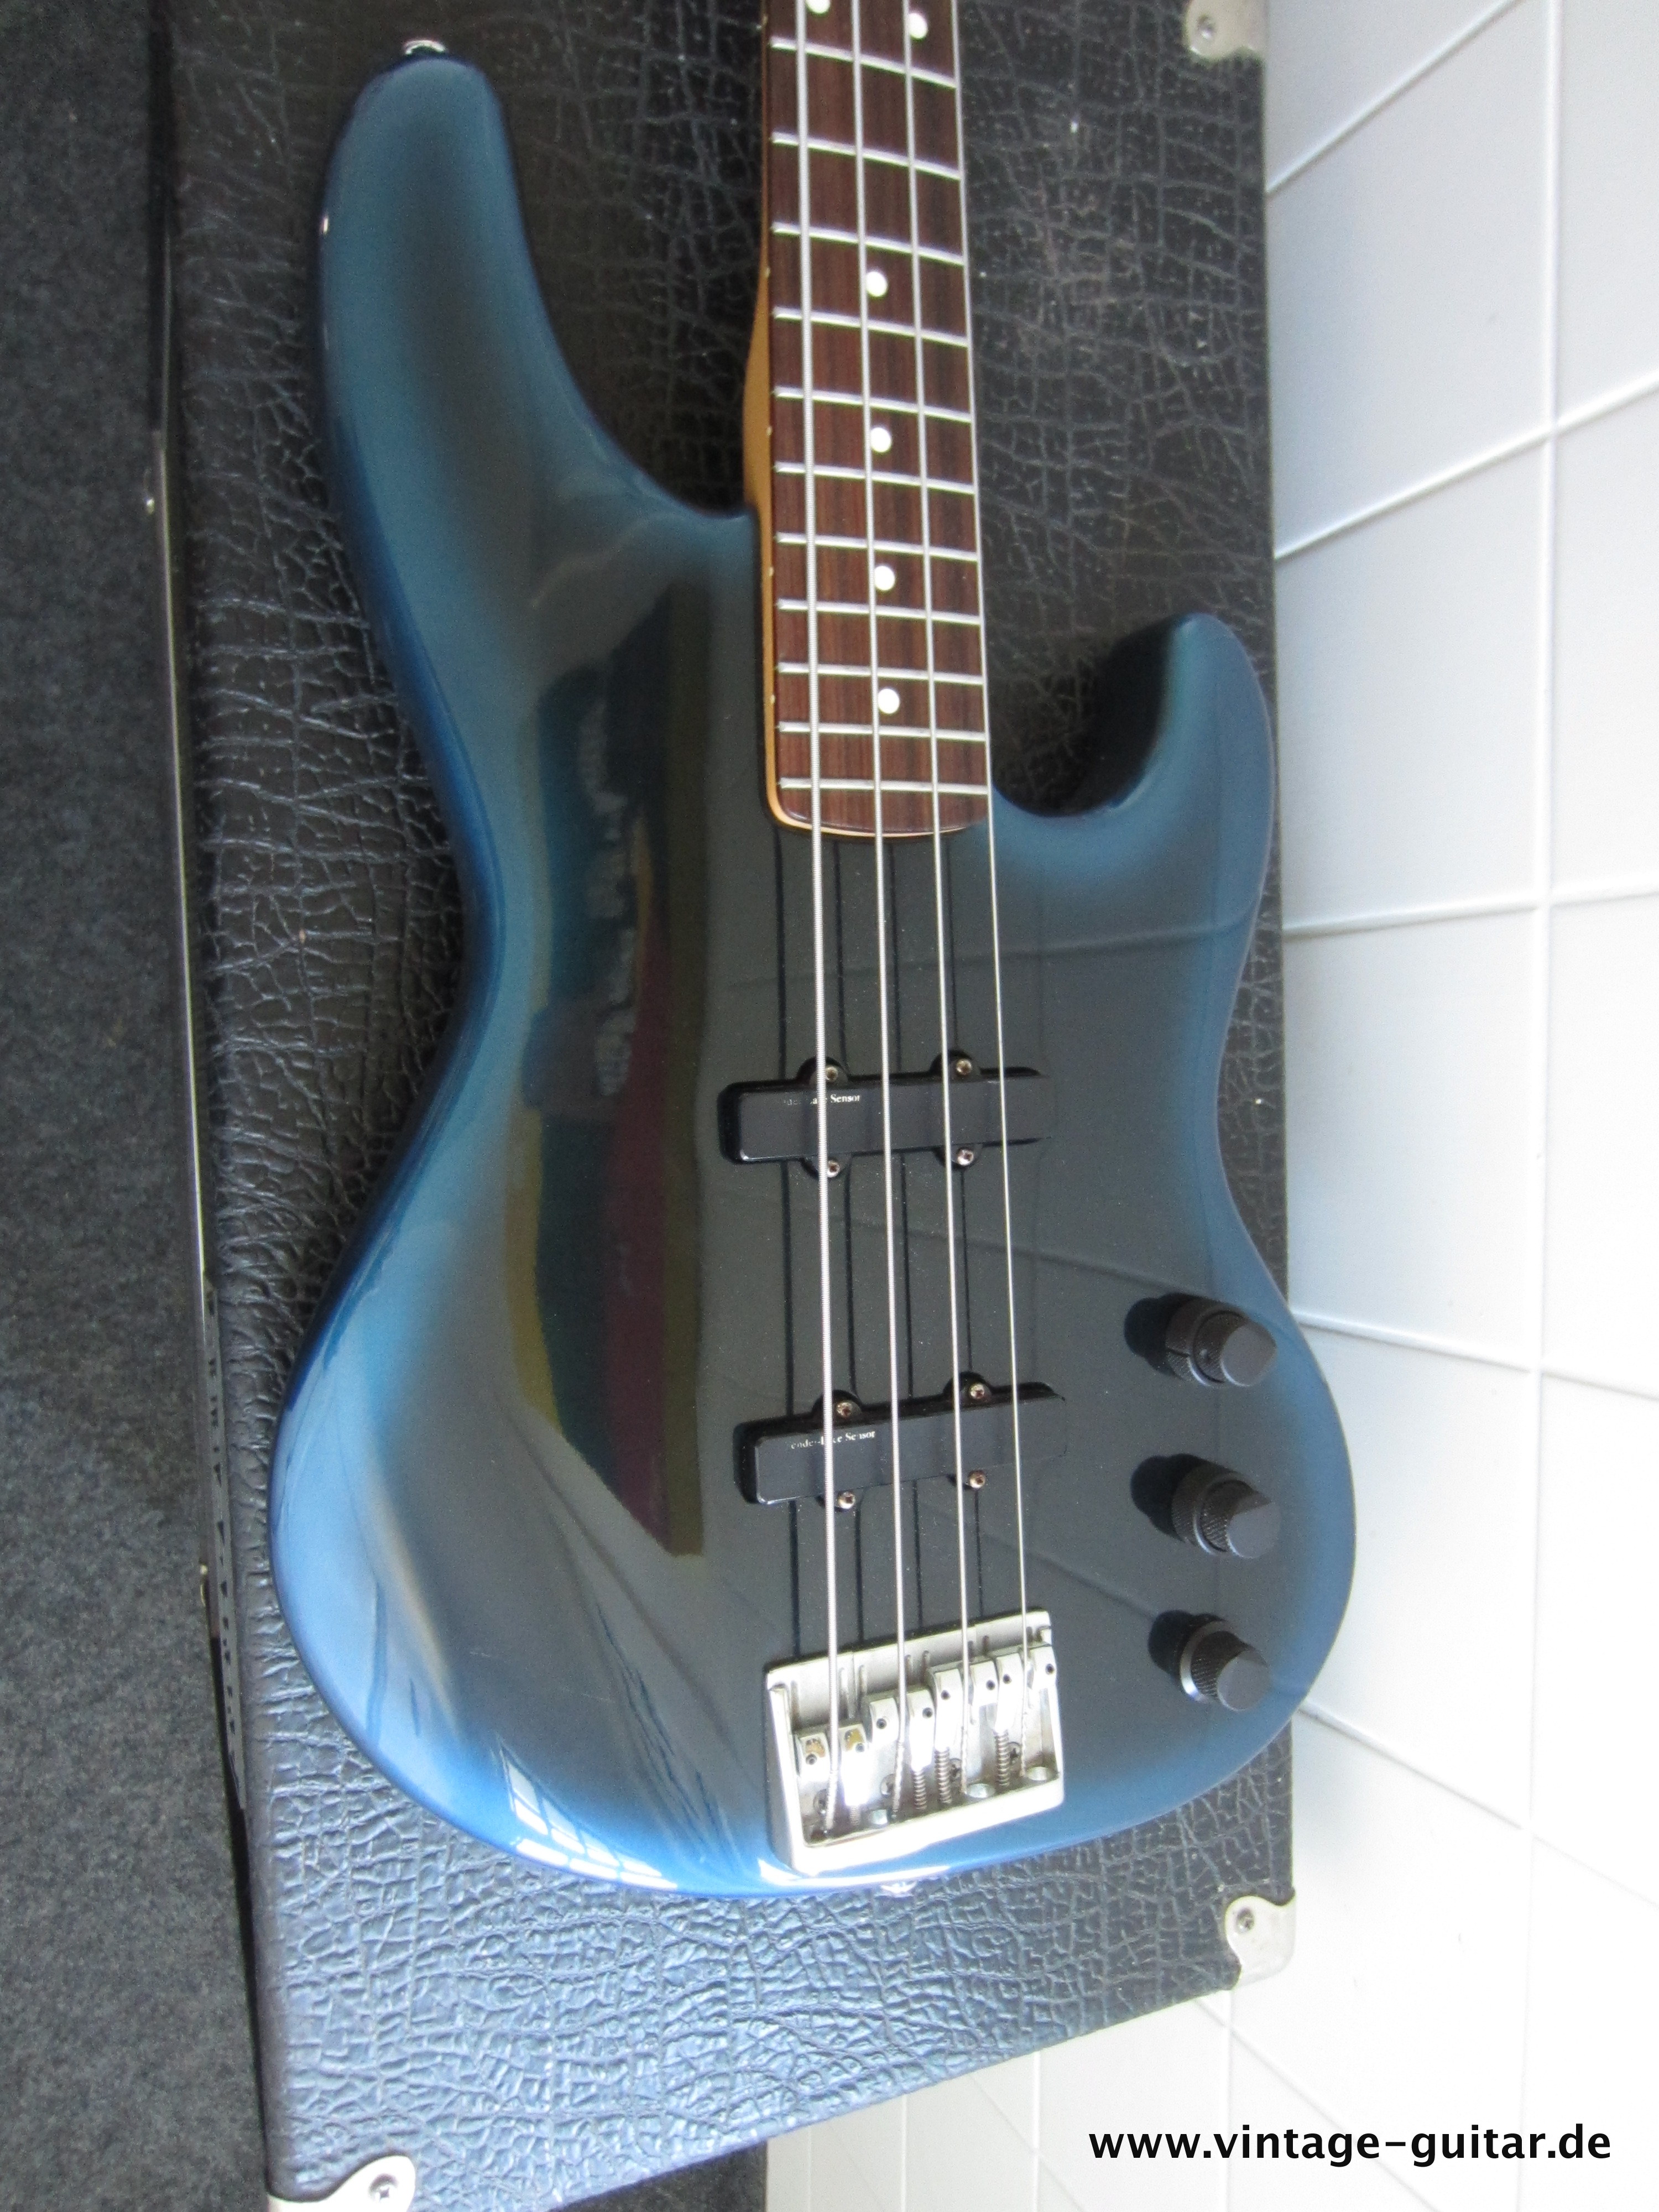 Fender-Jazz-Bass-Special-1990-blue-burst-007.jpg